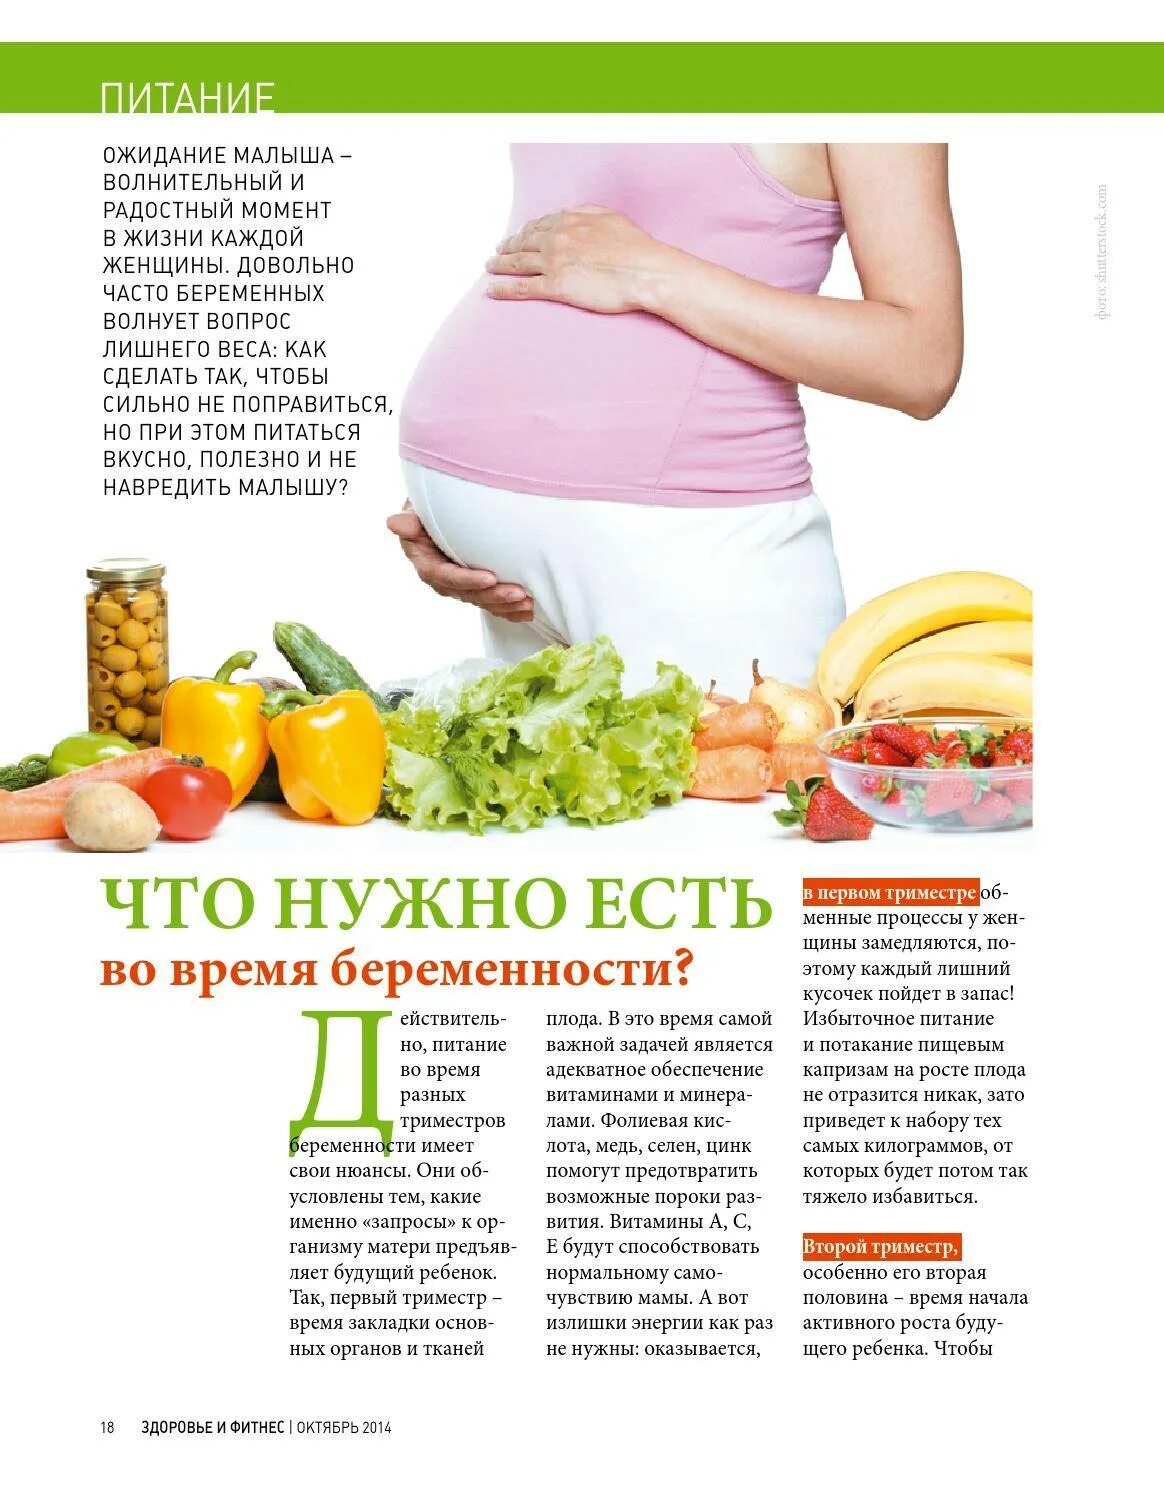 Питание для беременных. Рацион питания для беременных. План питания беременной. Правильное питание беременной.